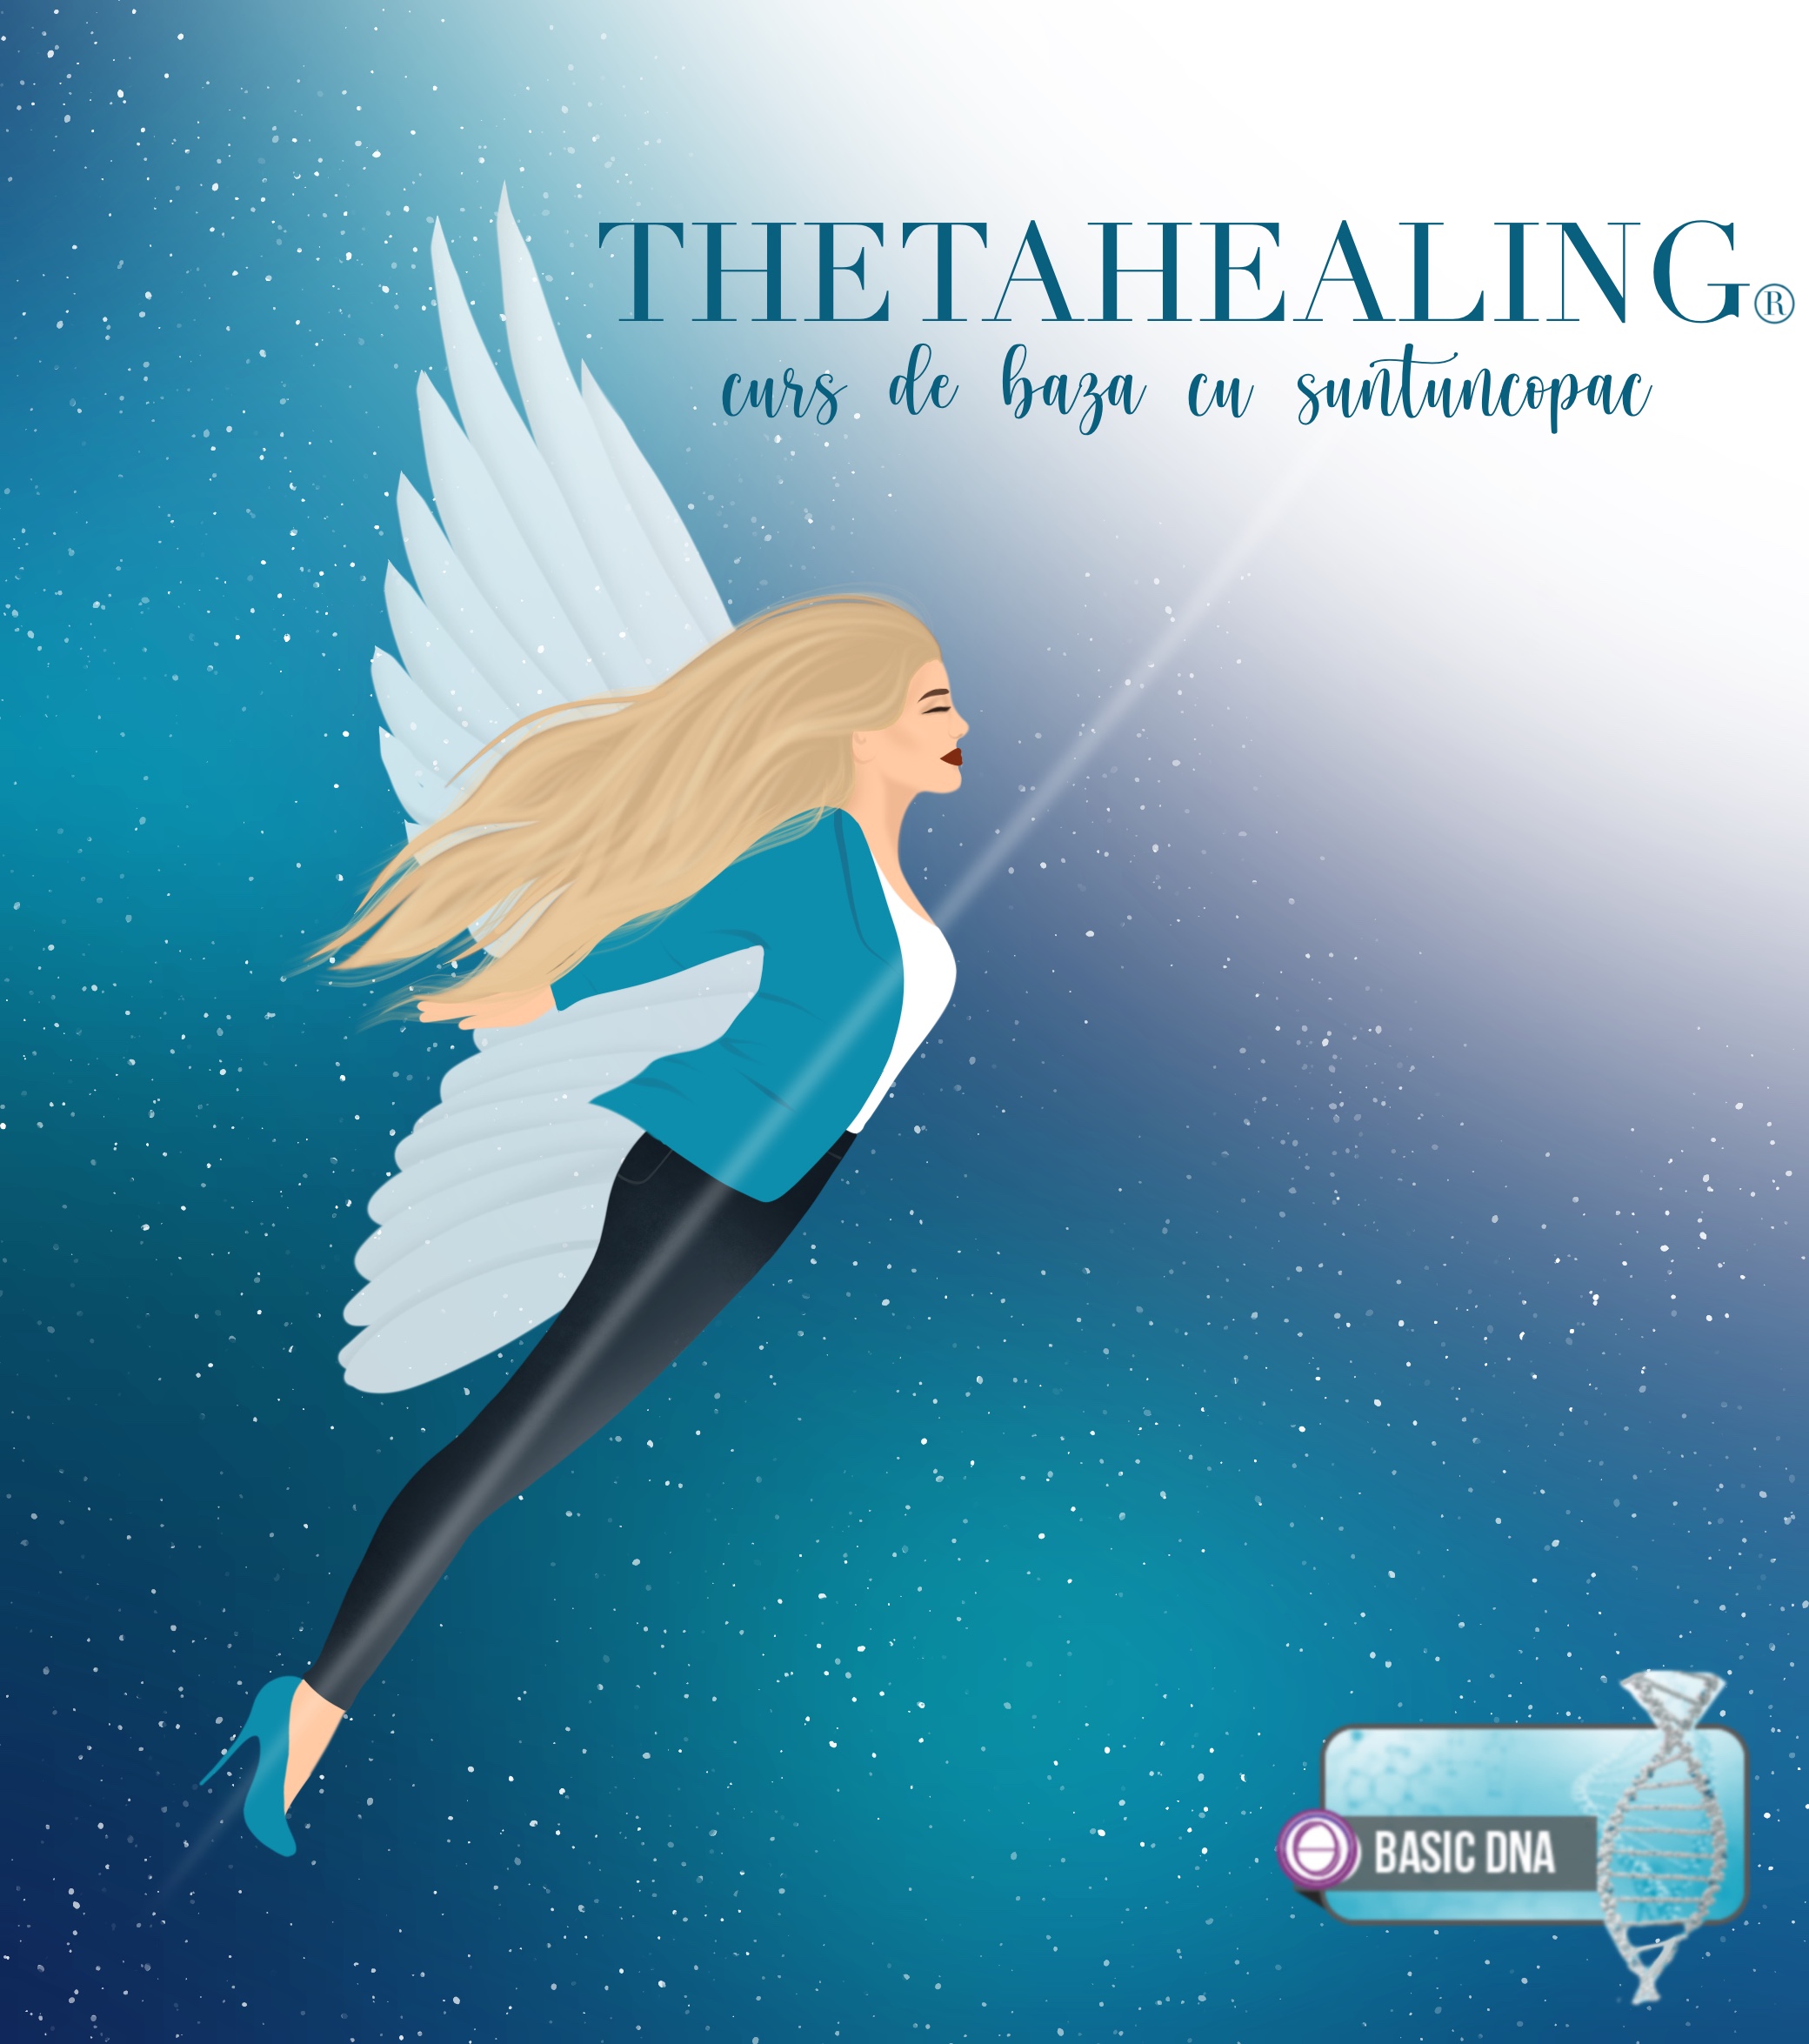 Thethe Healing-Curs de baza